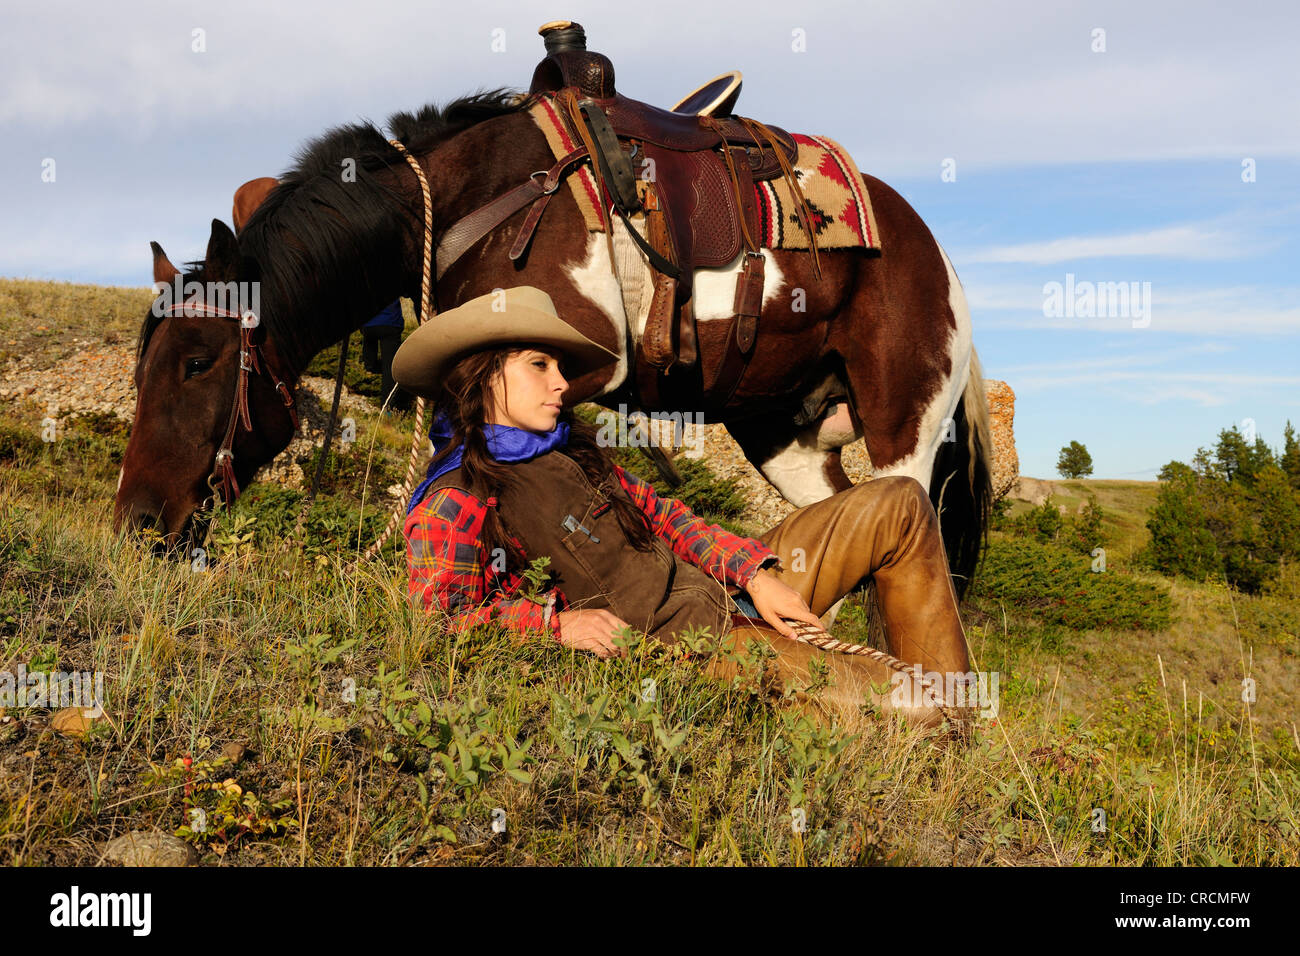 Cowgirl liegen in der Wiese, ihr Pferd stand neben ihr, Saskatchewan, Kanada Stockfoto